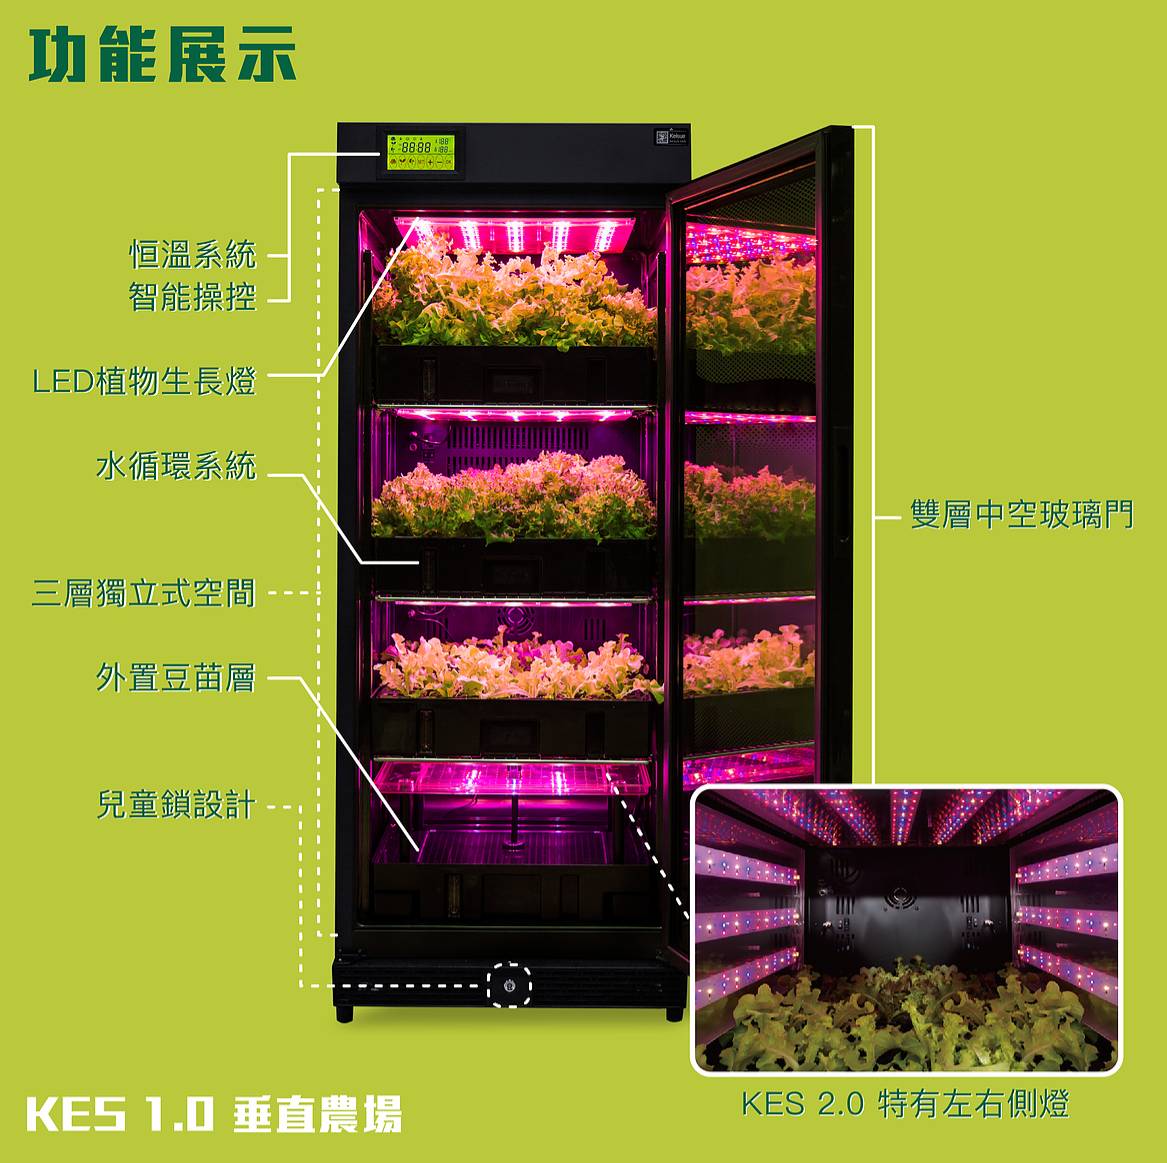 (image for) KES2.0 Home Aqua Farm Machine - Click Image to Close